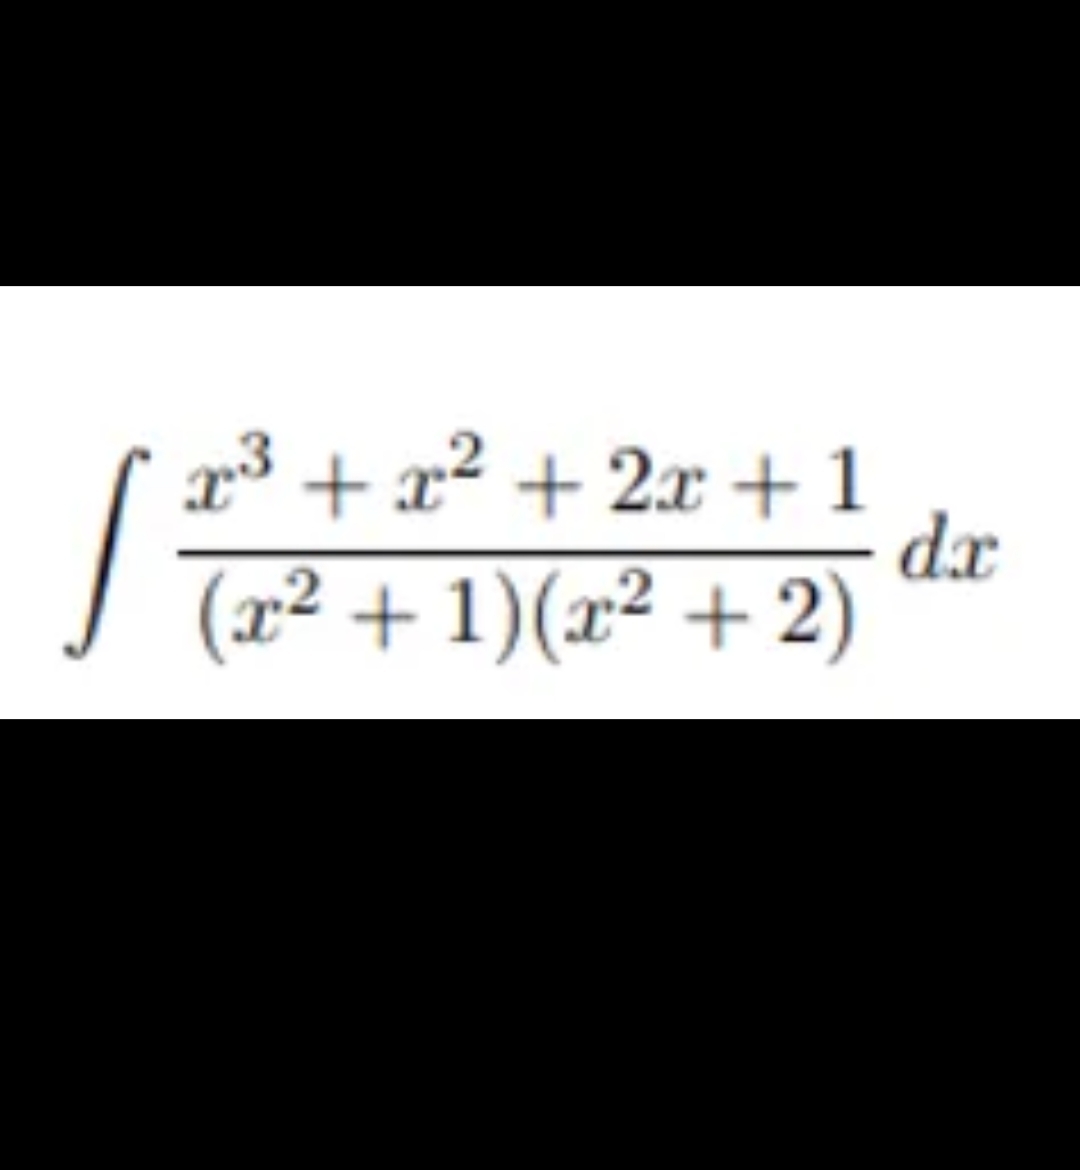 3 + x² + 2x +1
dr
I Ta²+ 1)(x² + 2)
